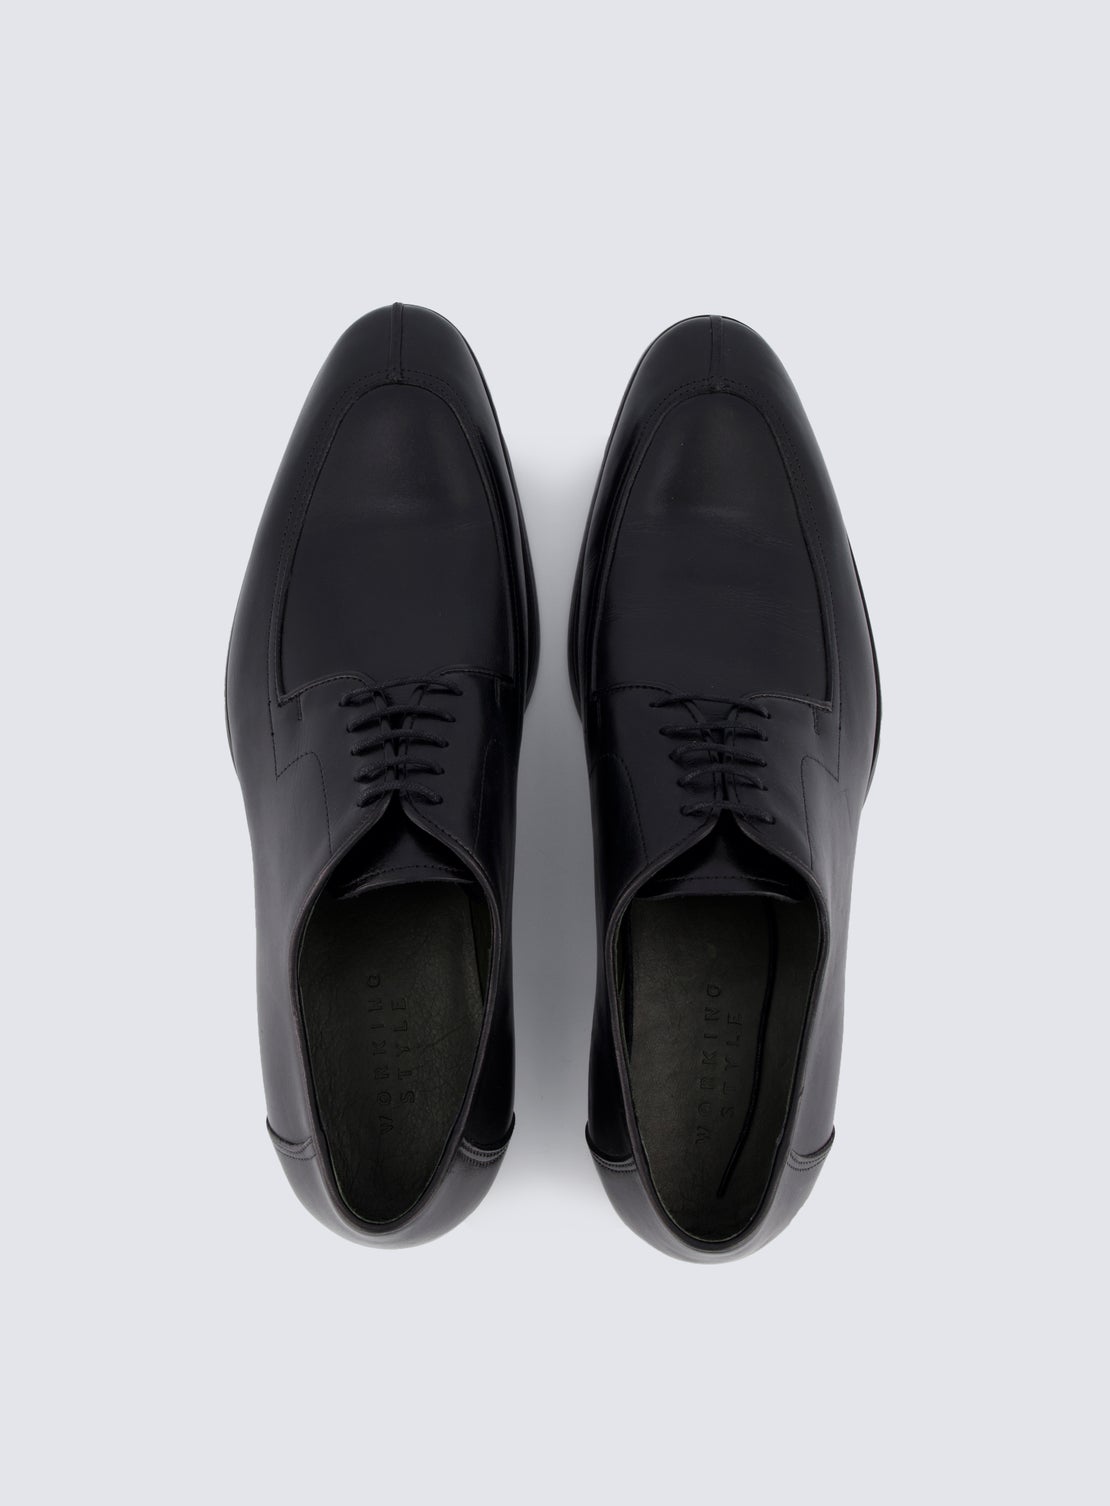 Ocasek Black Shoe